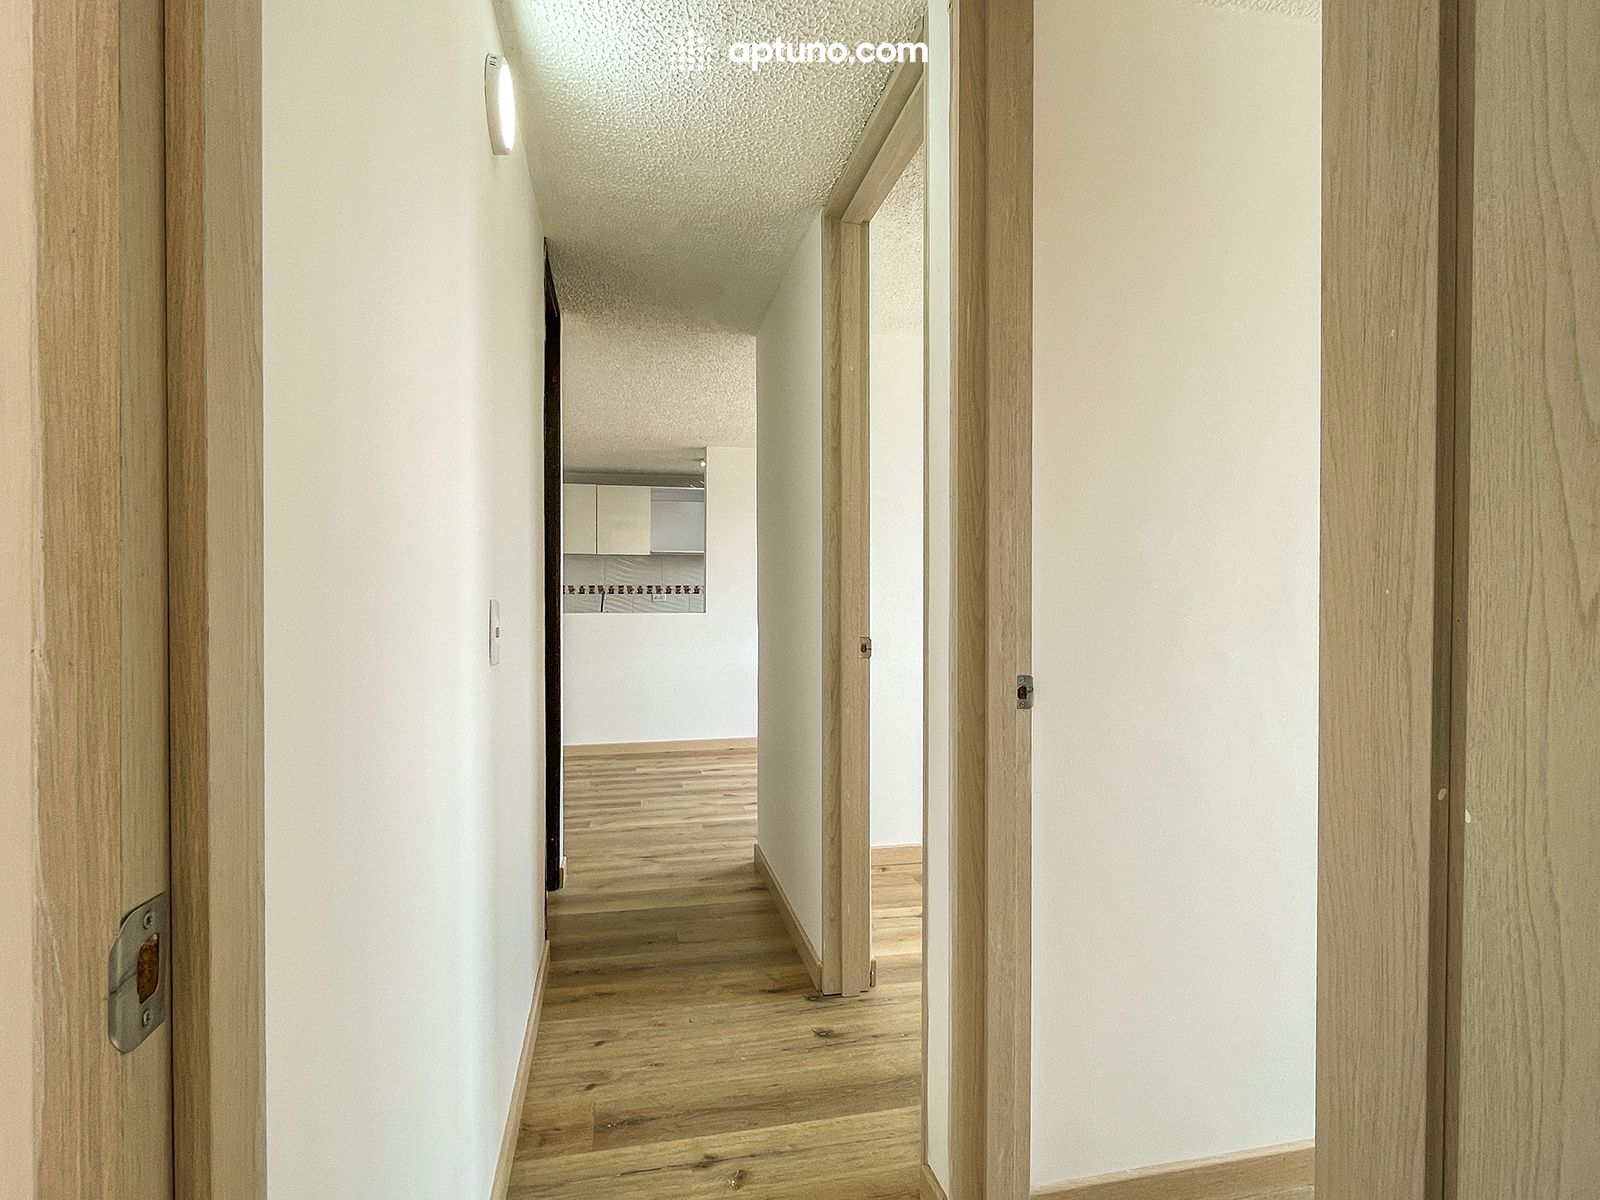 Apartamento en arriendo Madrid 57 m² - $ 900.000,00